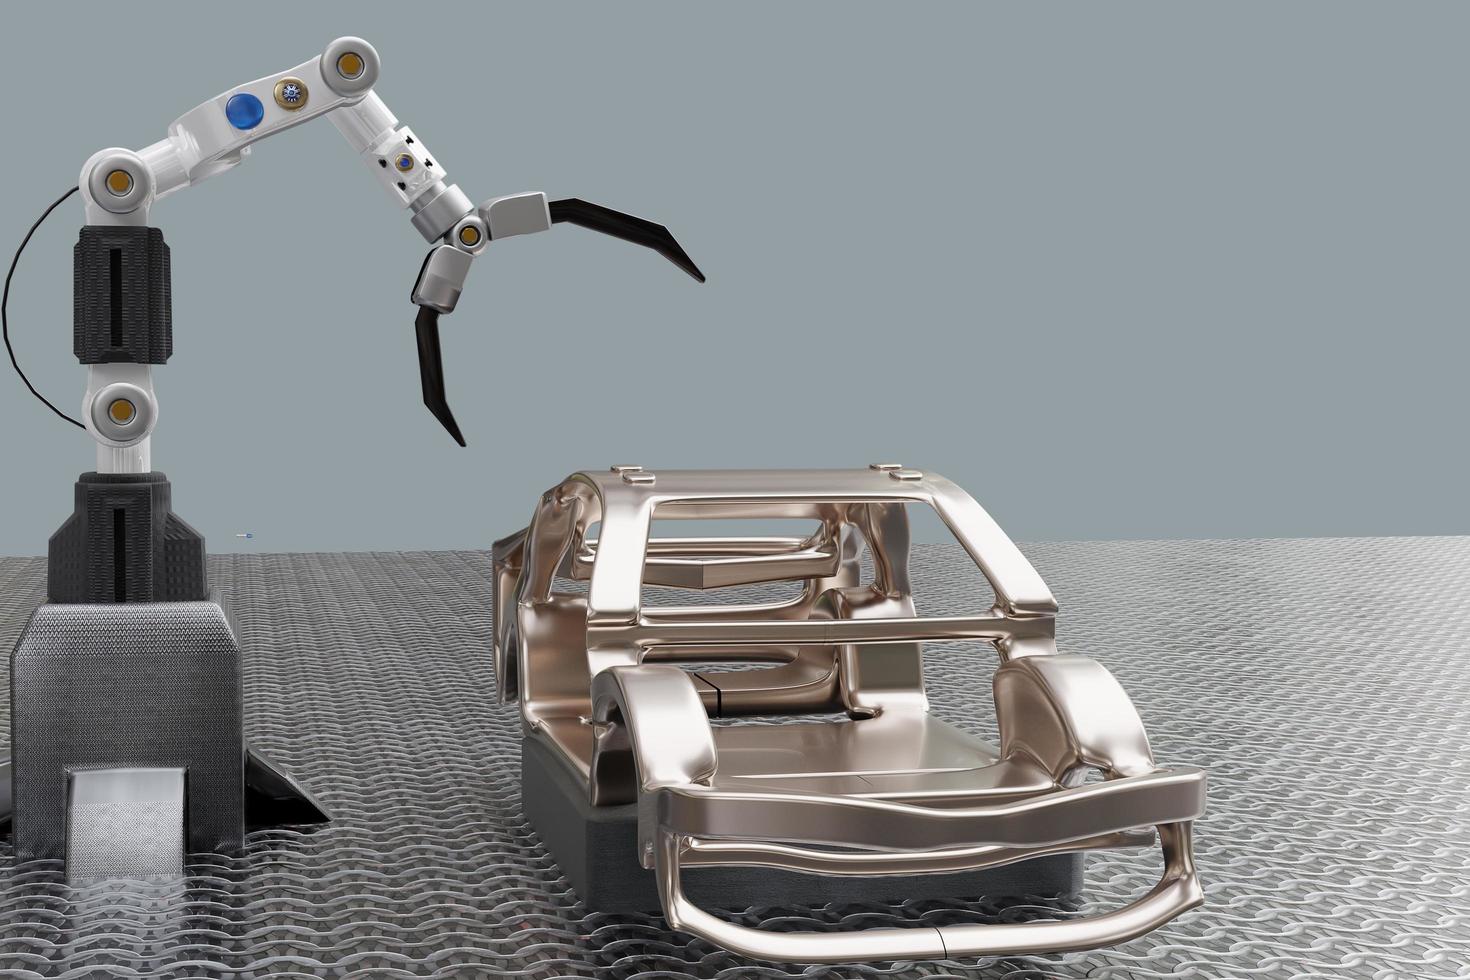 autoproduktion verarbeitungsservice in der fabrik roboter hallo tech roboter ai querlenker handroboter künstlich für autotechnik im garagenhändler mit tech hand cyborg 2022 3d render foto